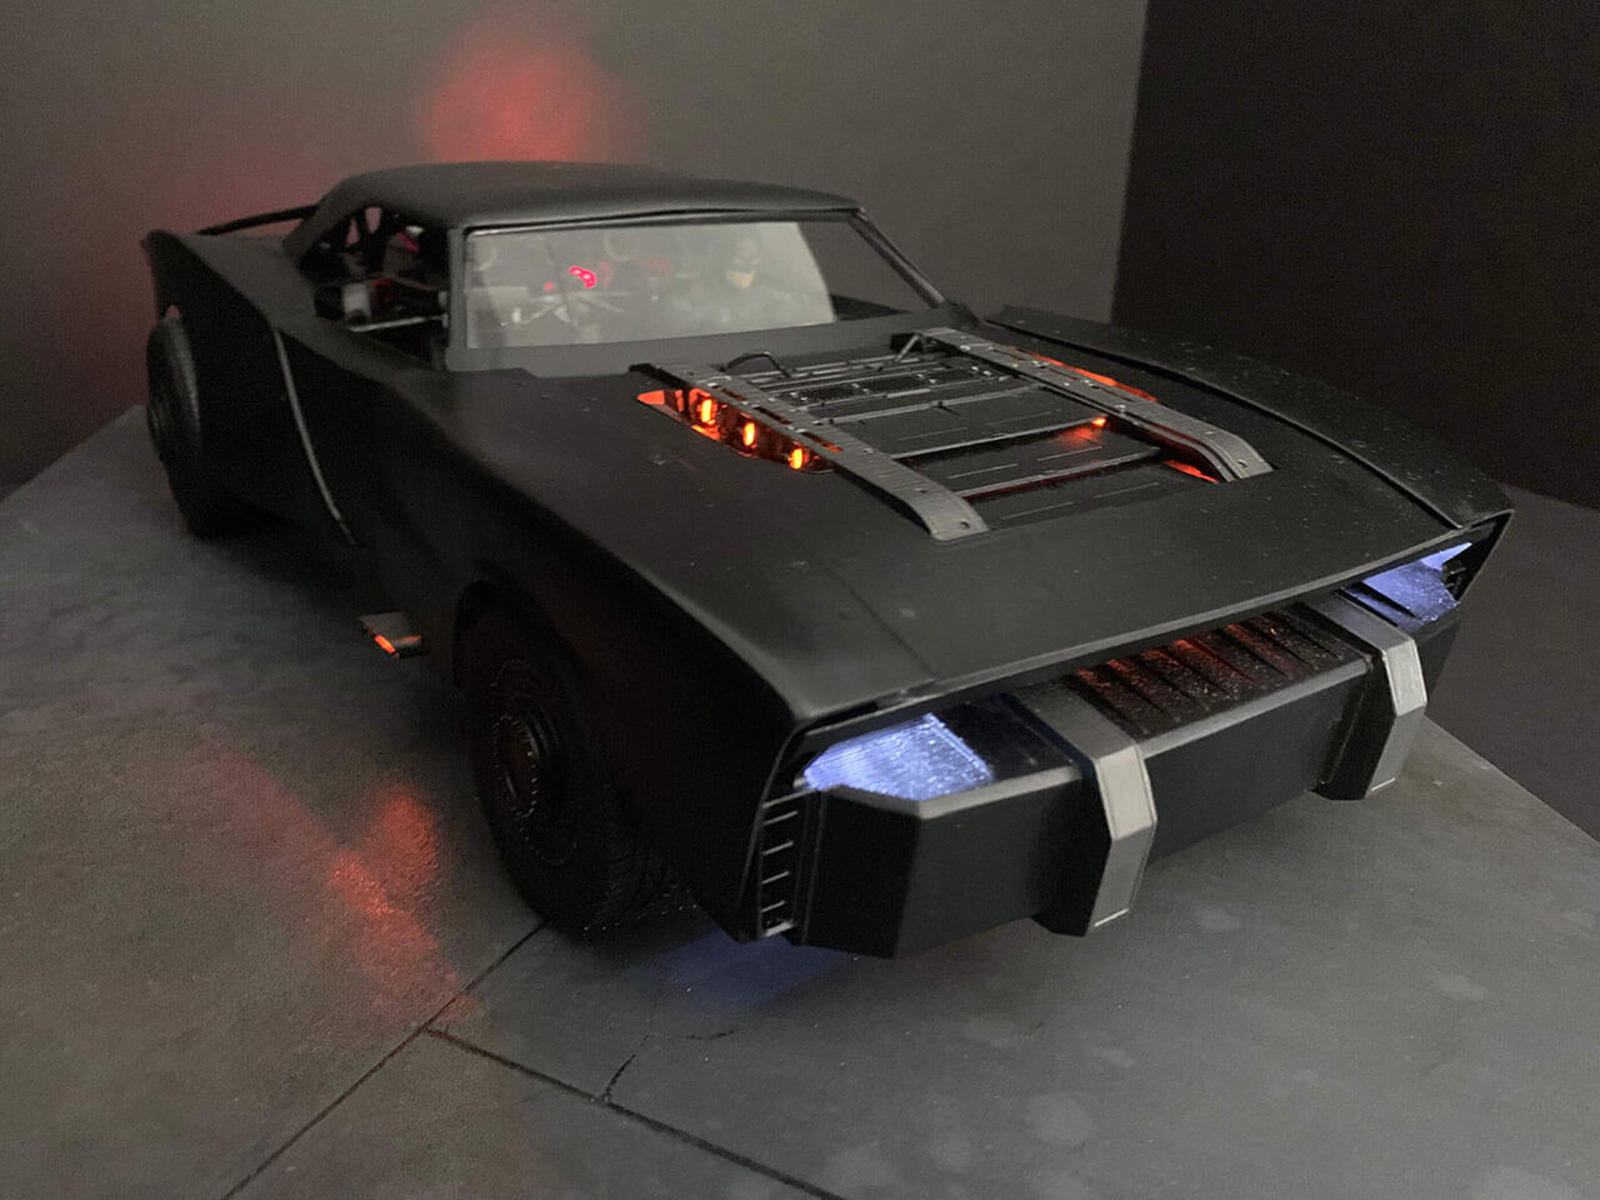 سيارة باتموبيل الجديدة تظهر في إعلان فيلم باتمان القادم 27